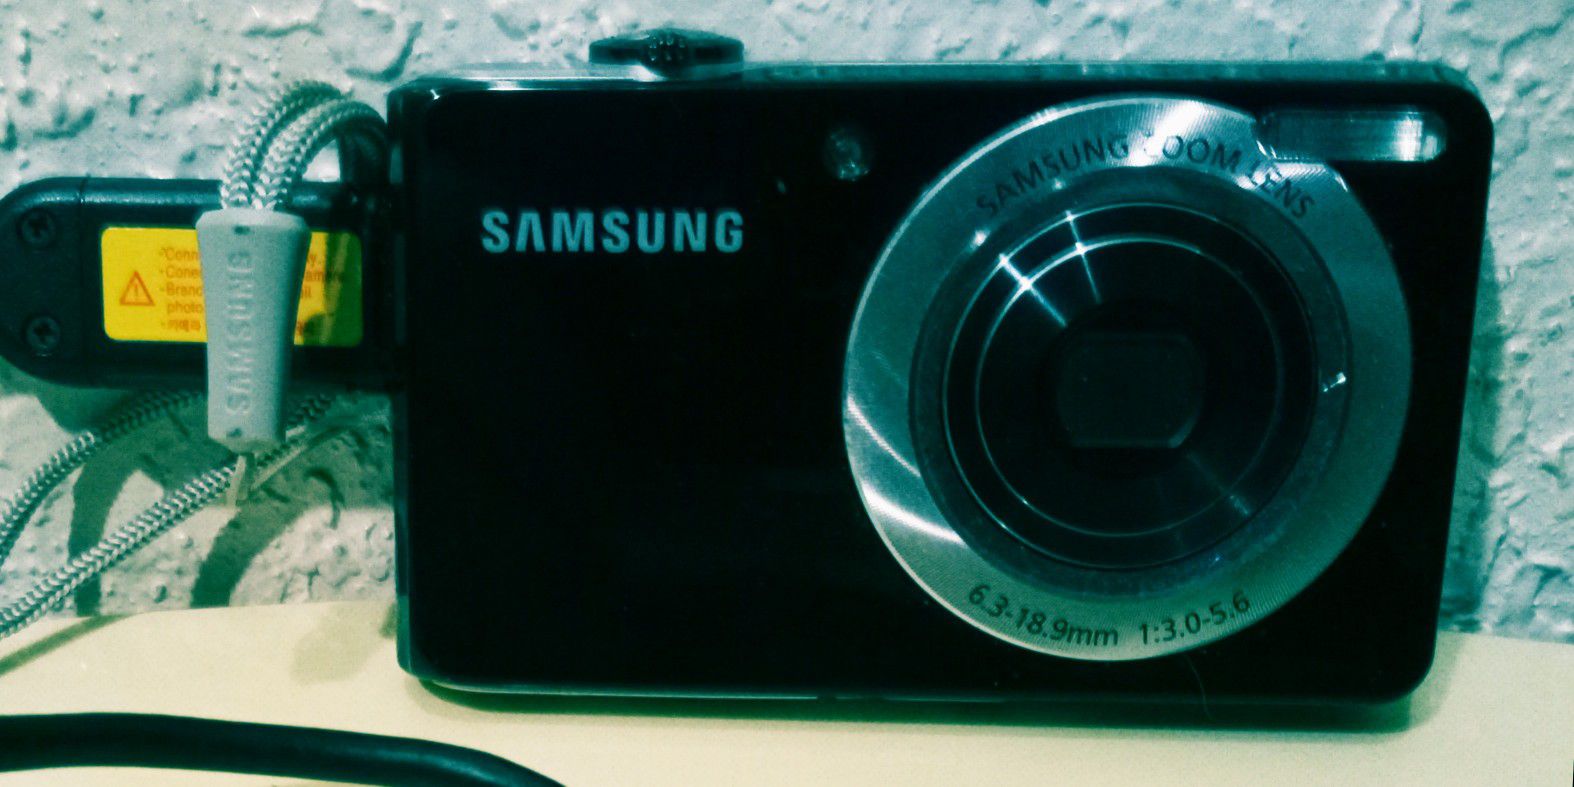 Samsung DualView TL205 digital camera